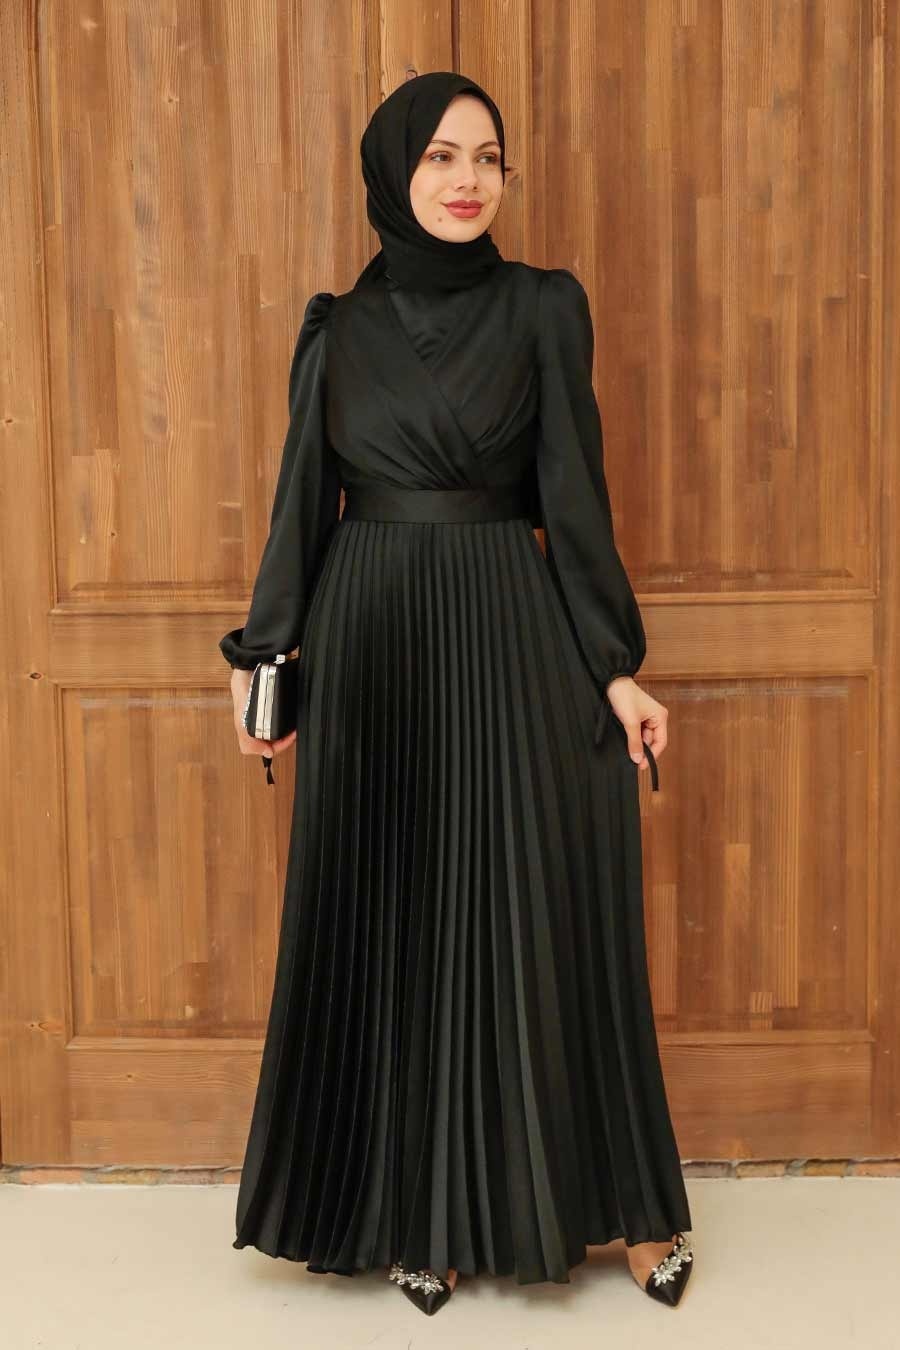 Neva Style - Elegant Black Islamic Clothing Wedding Dress 3452S